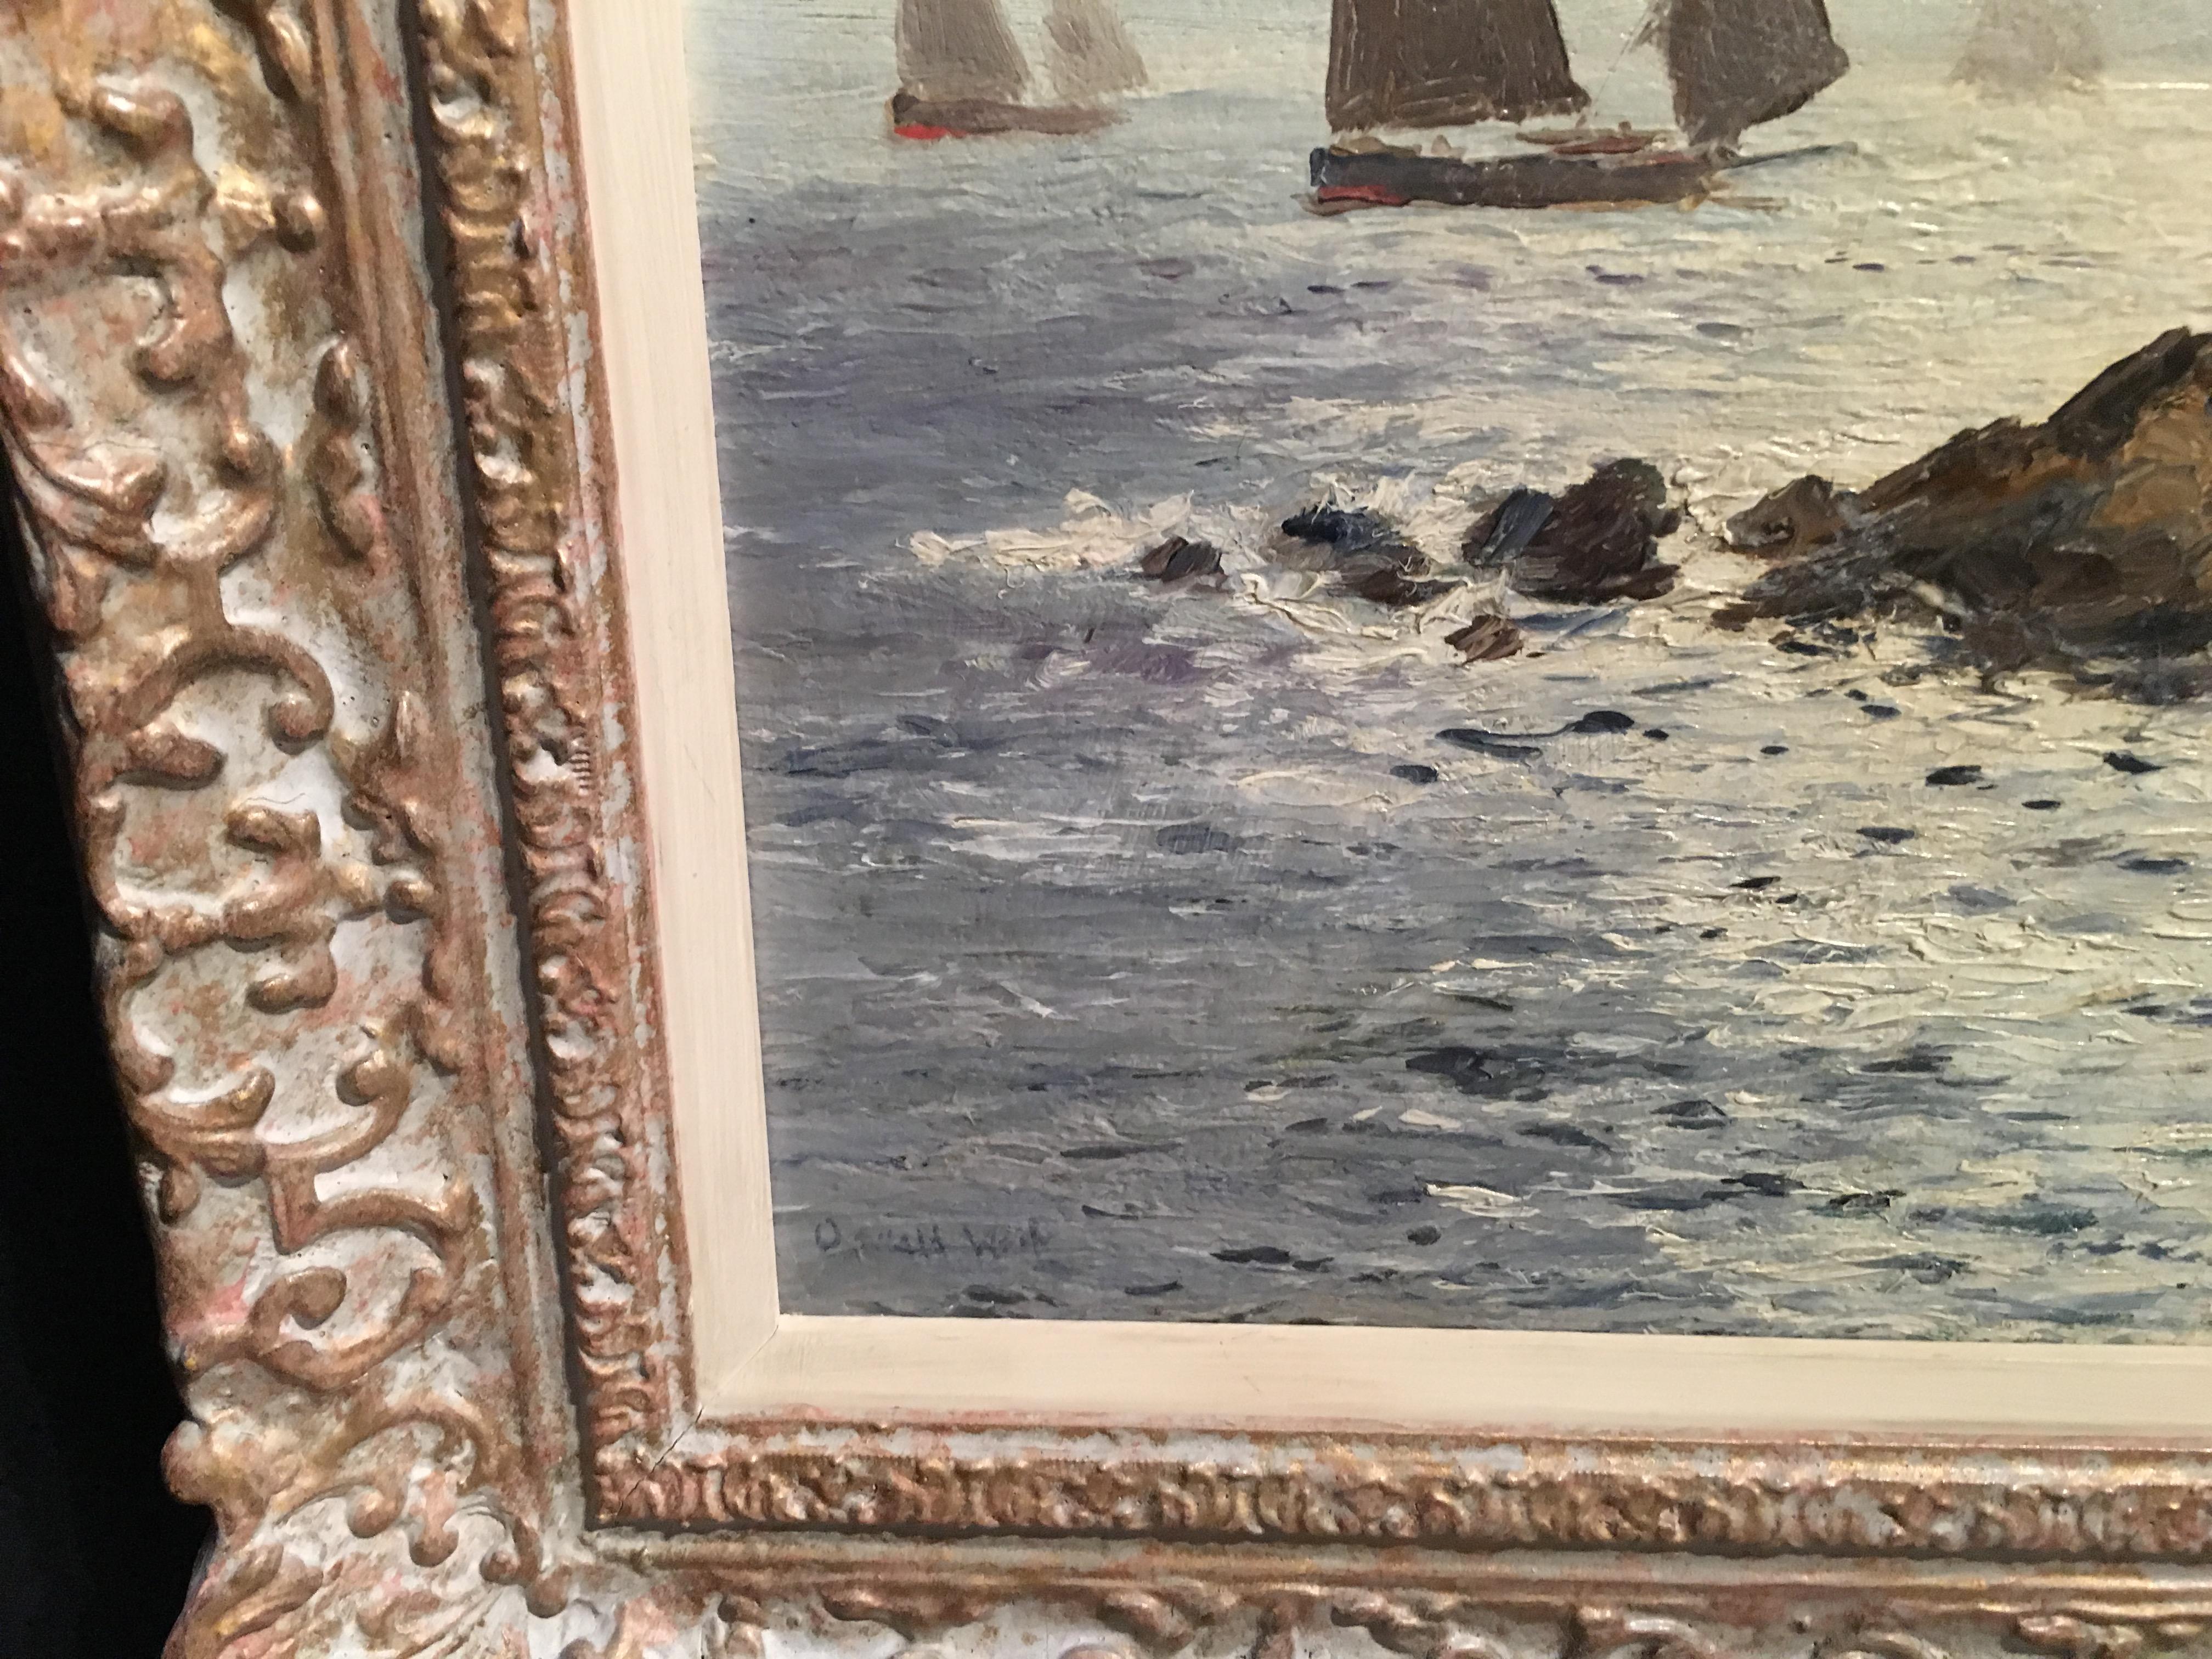 English Impressionist Cornish coastal scene - Painting by Oswald West